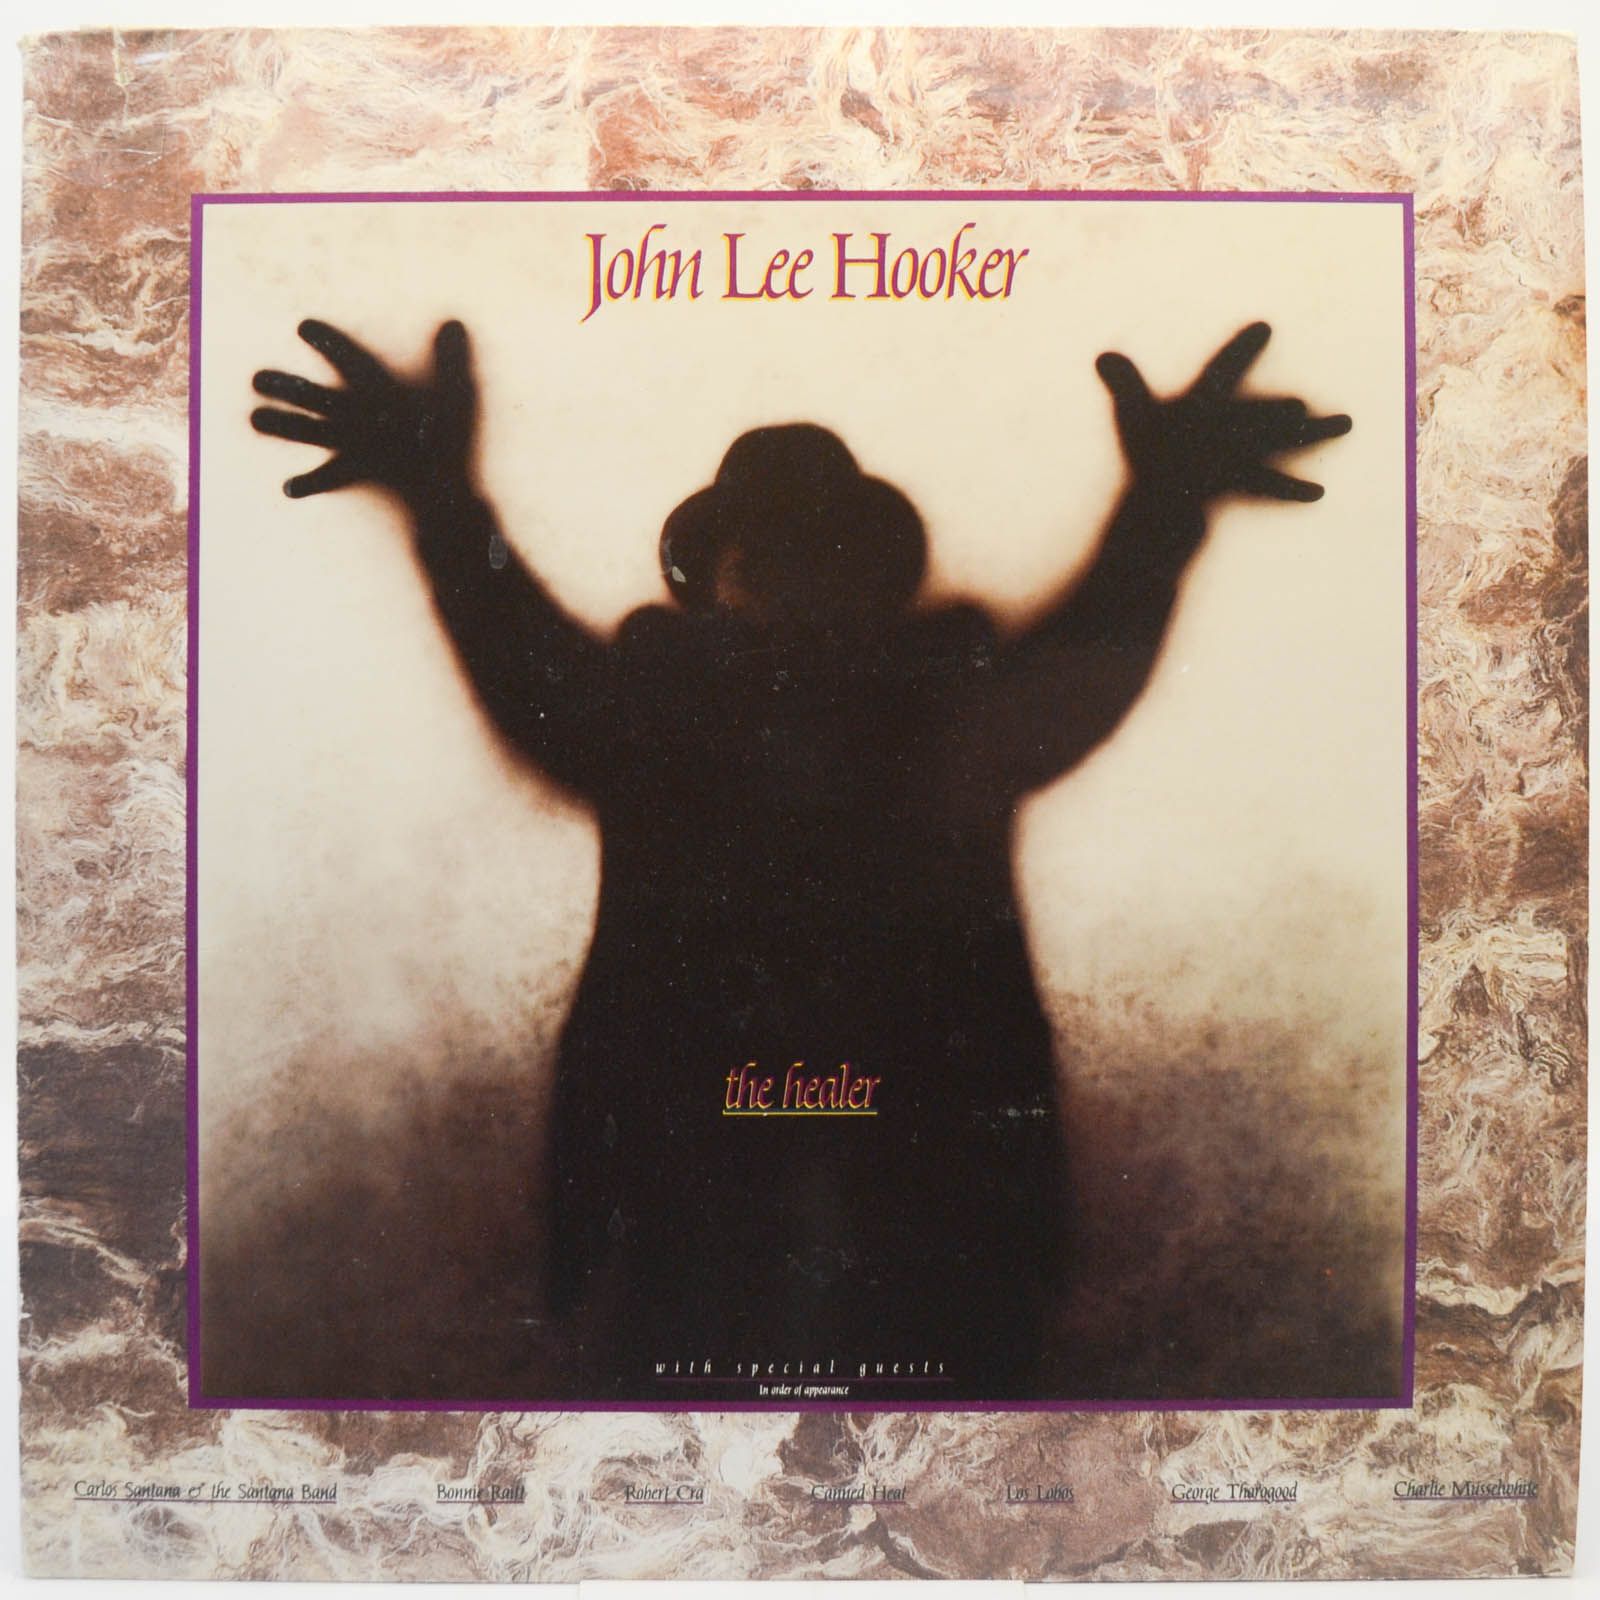 John Lee Hooker — The Healer, 1989